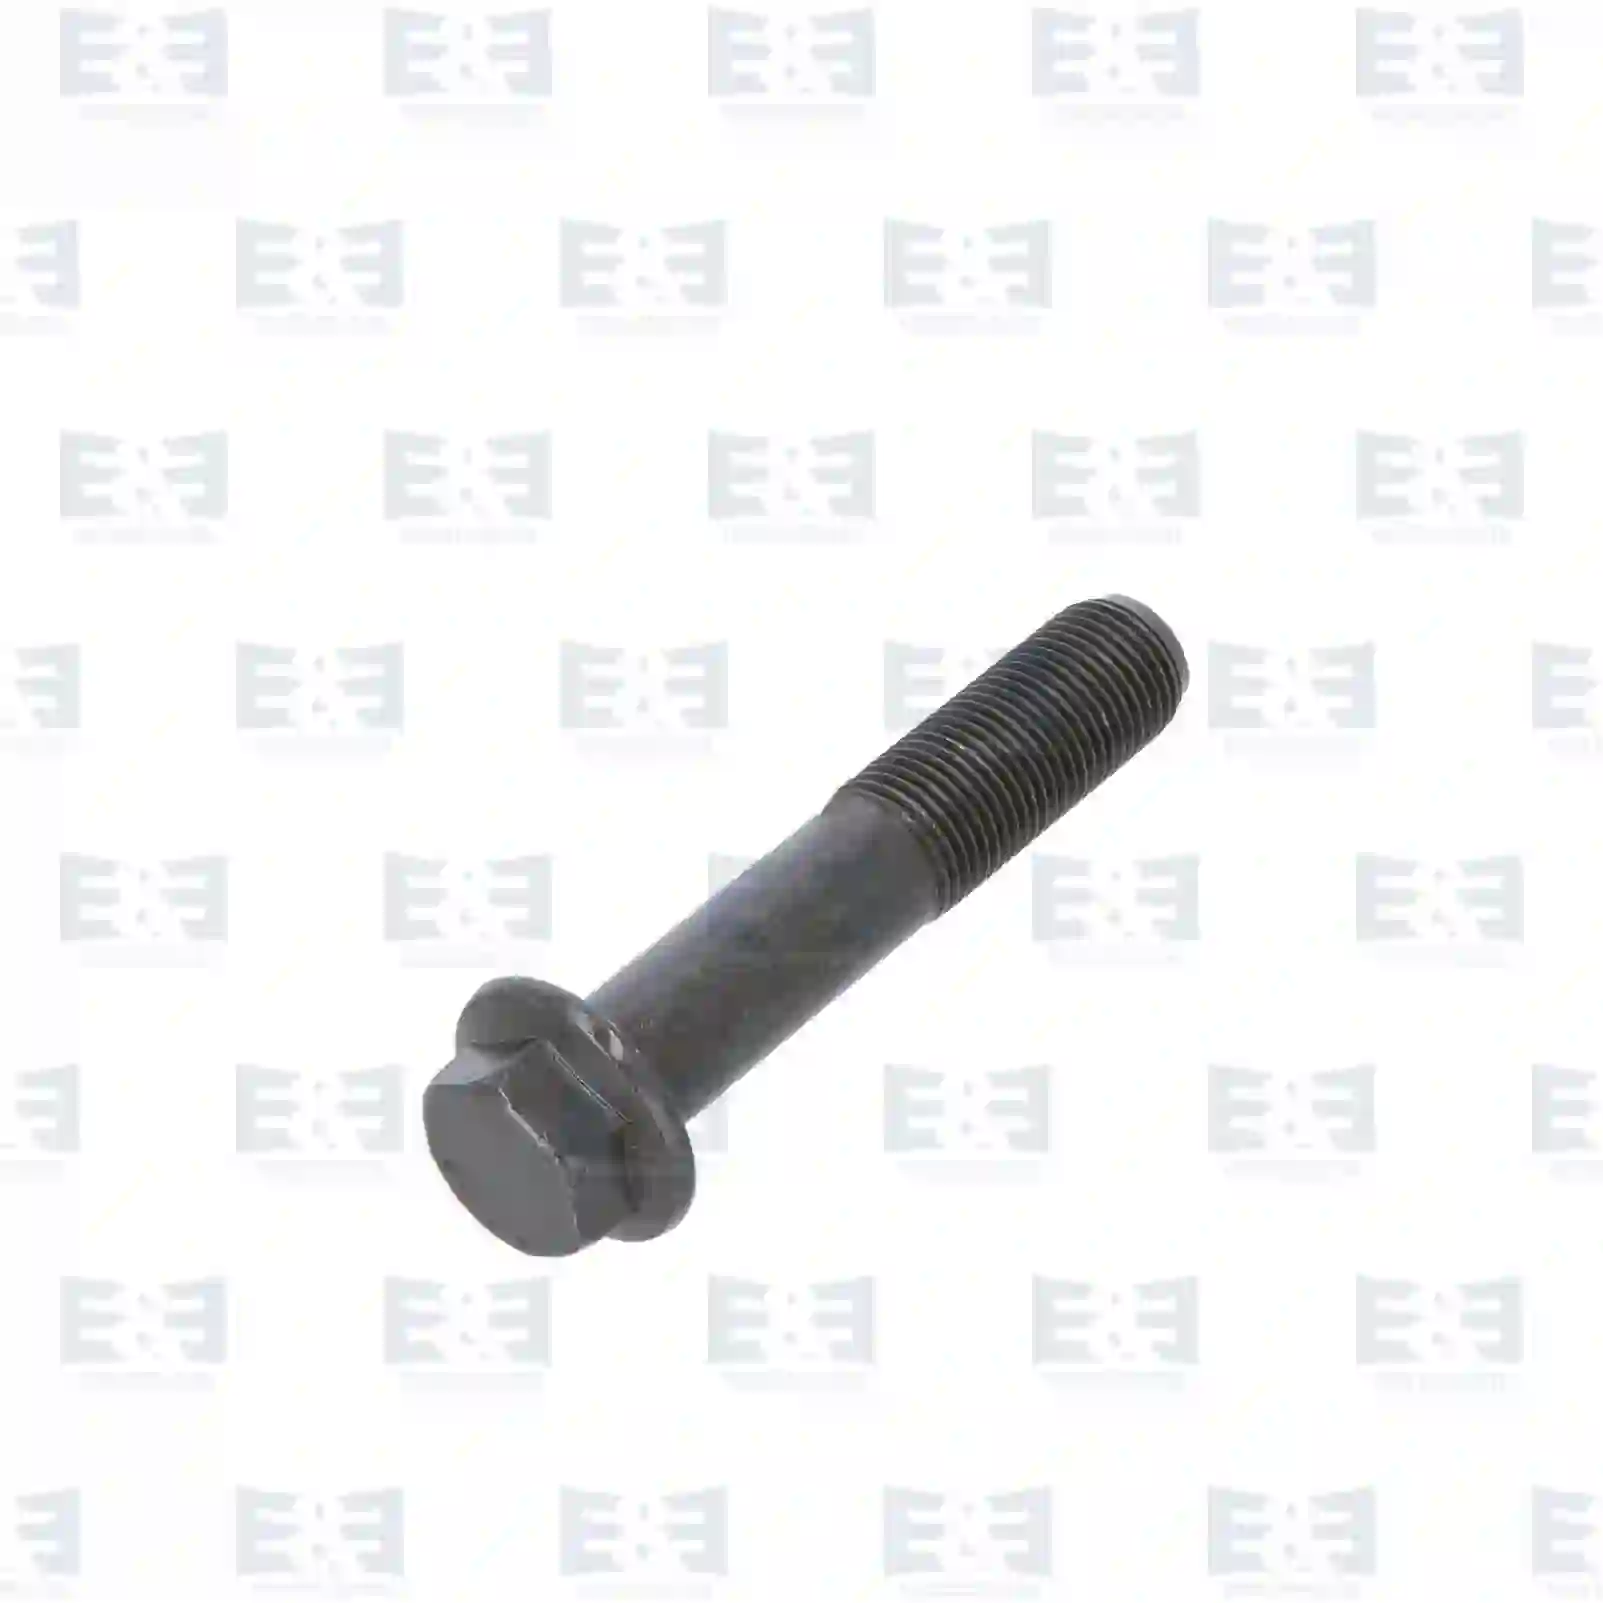  Flange screw || E&E Truck Spare Parts | Truck Spare Parts, Auotomotive Spare Parts